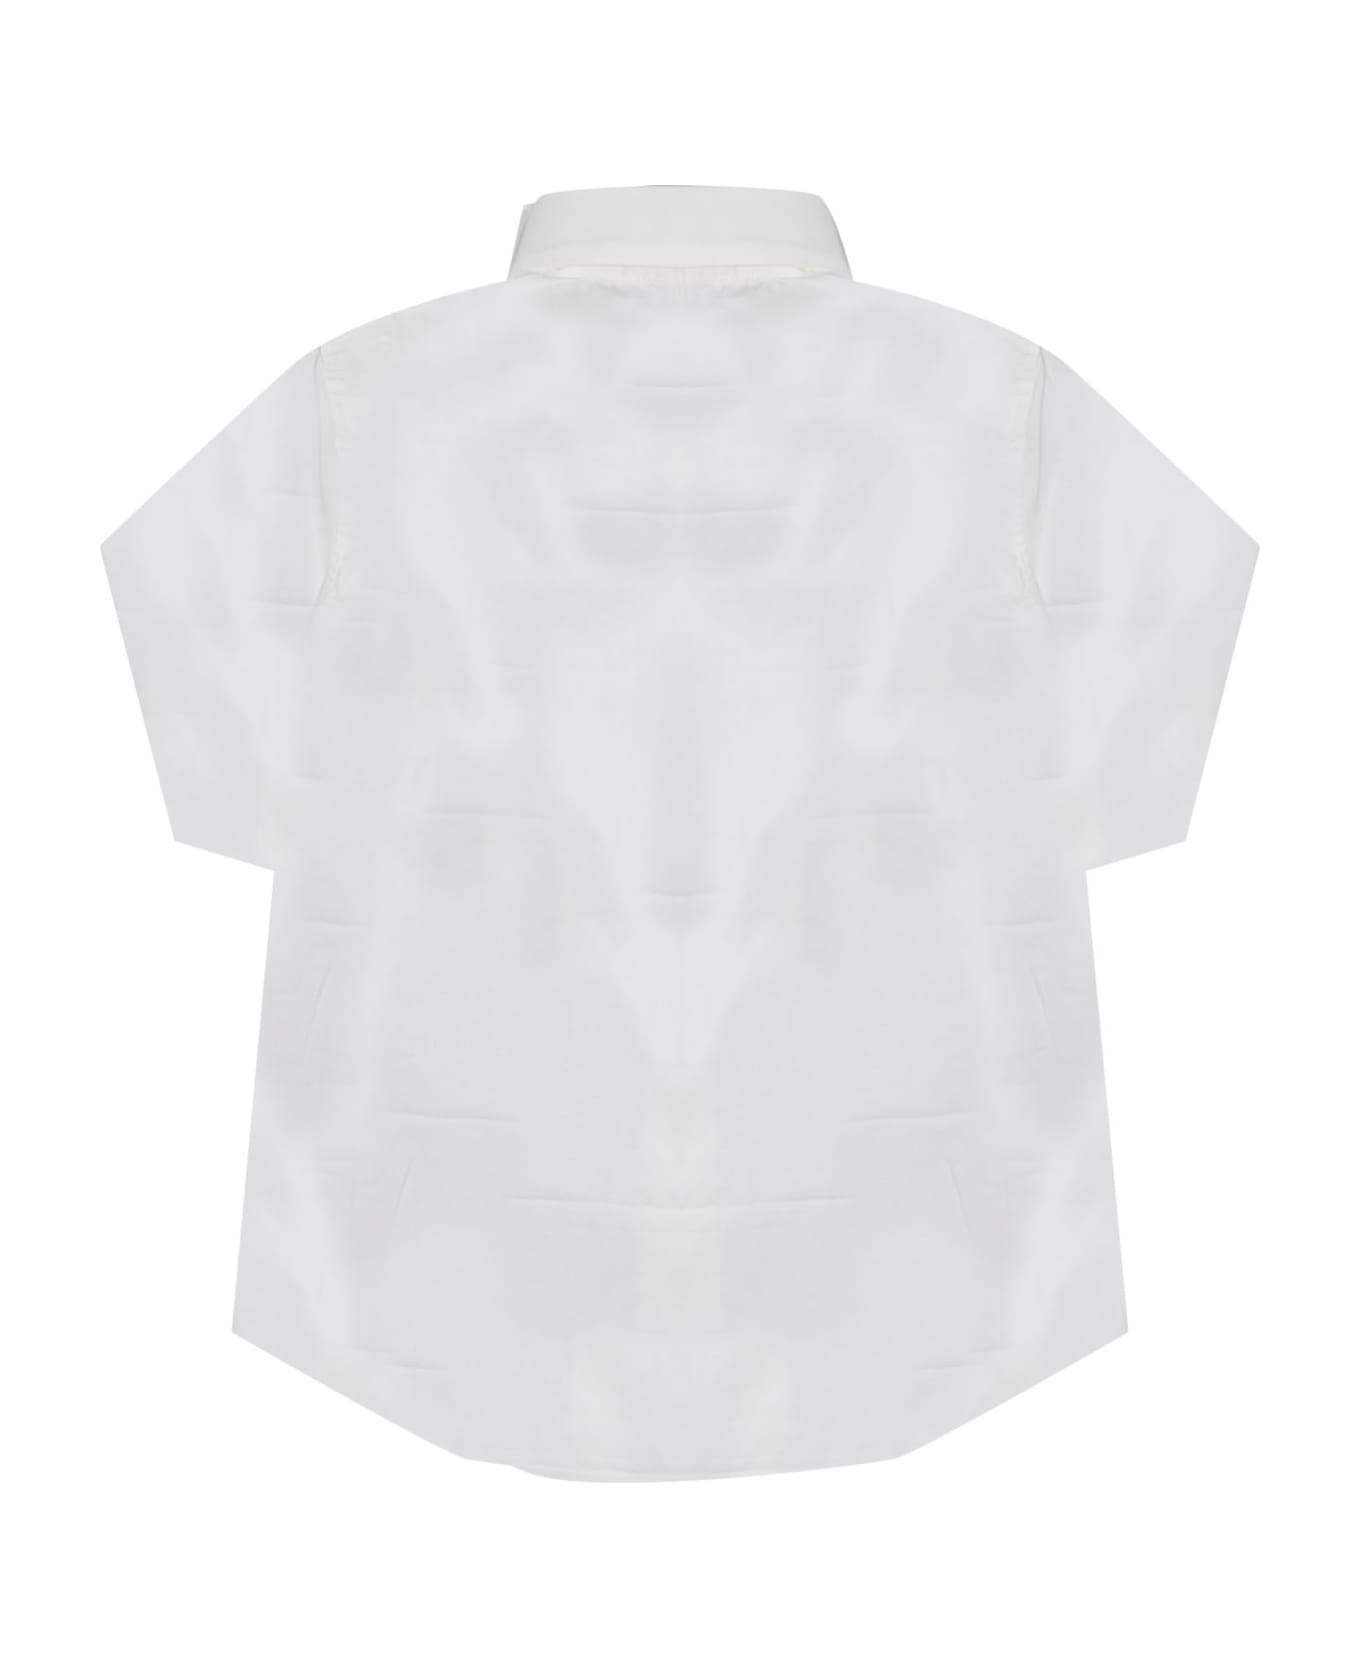 Dsquared2 Cotton Shirt - White シャツ